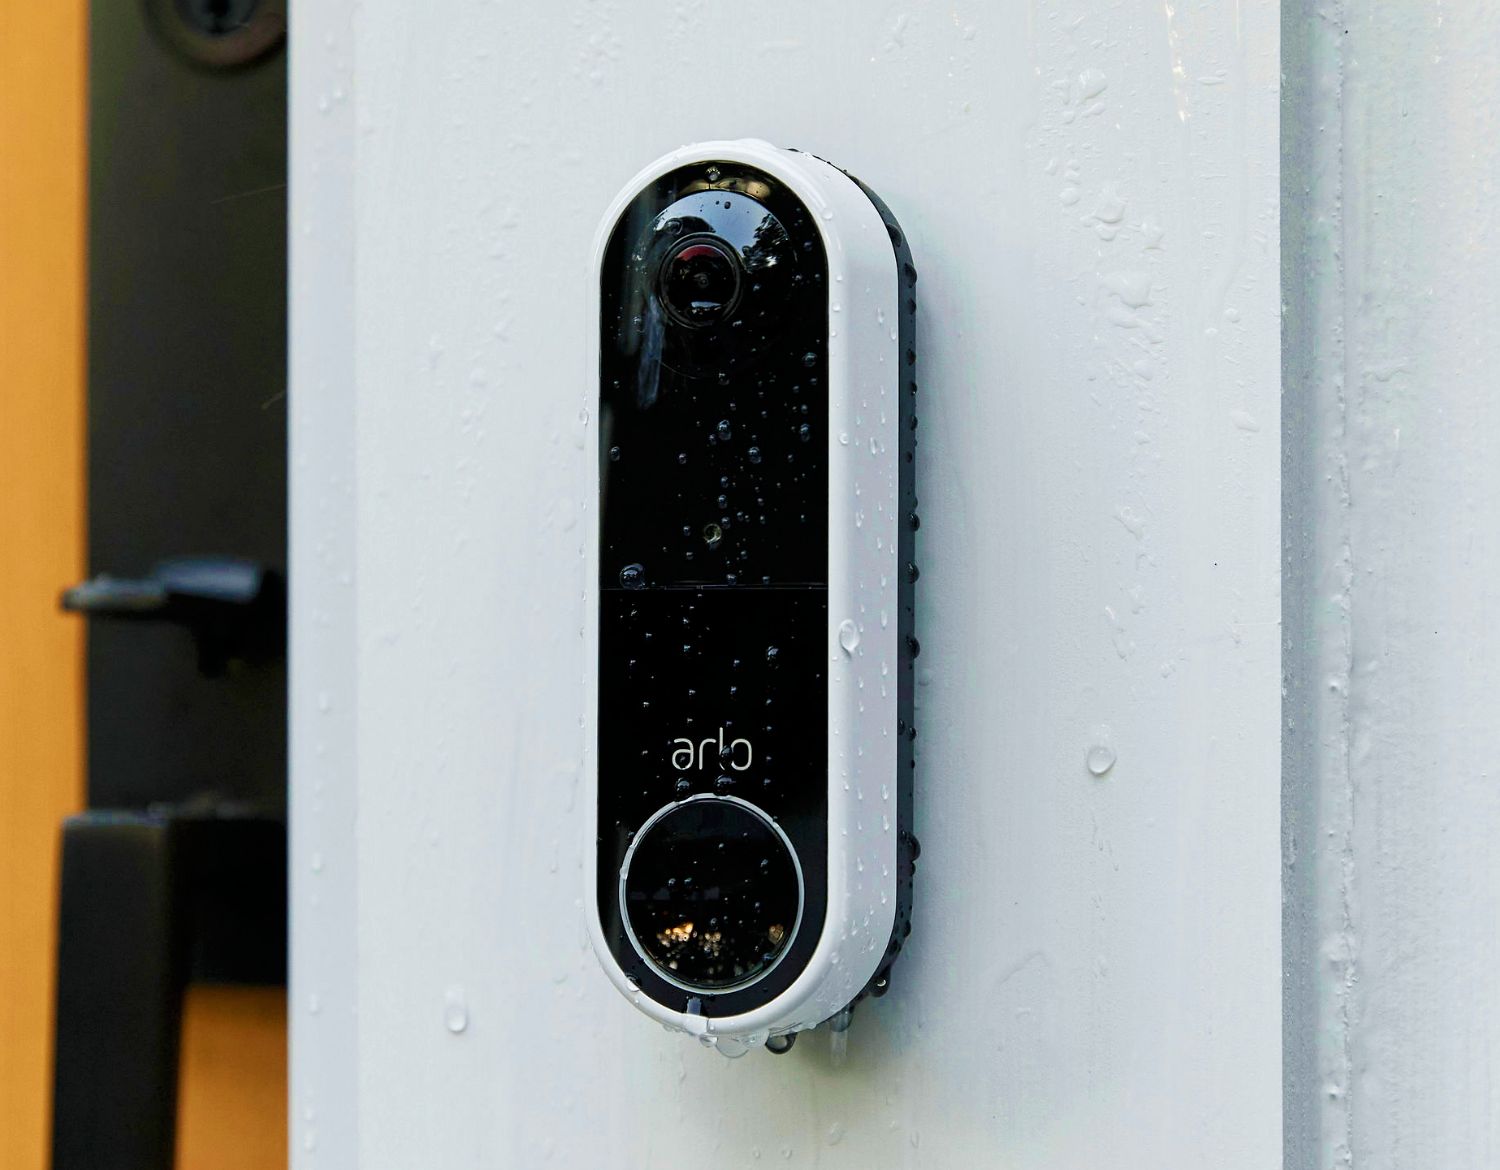 En Arlo trådløs videoringeklokke på en inngangsdør - designet for å tåle varme, kulde, regn eller sol.